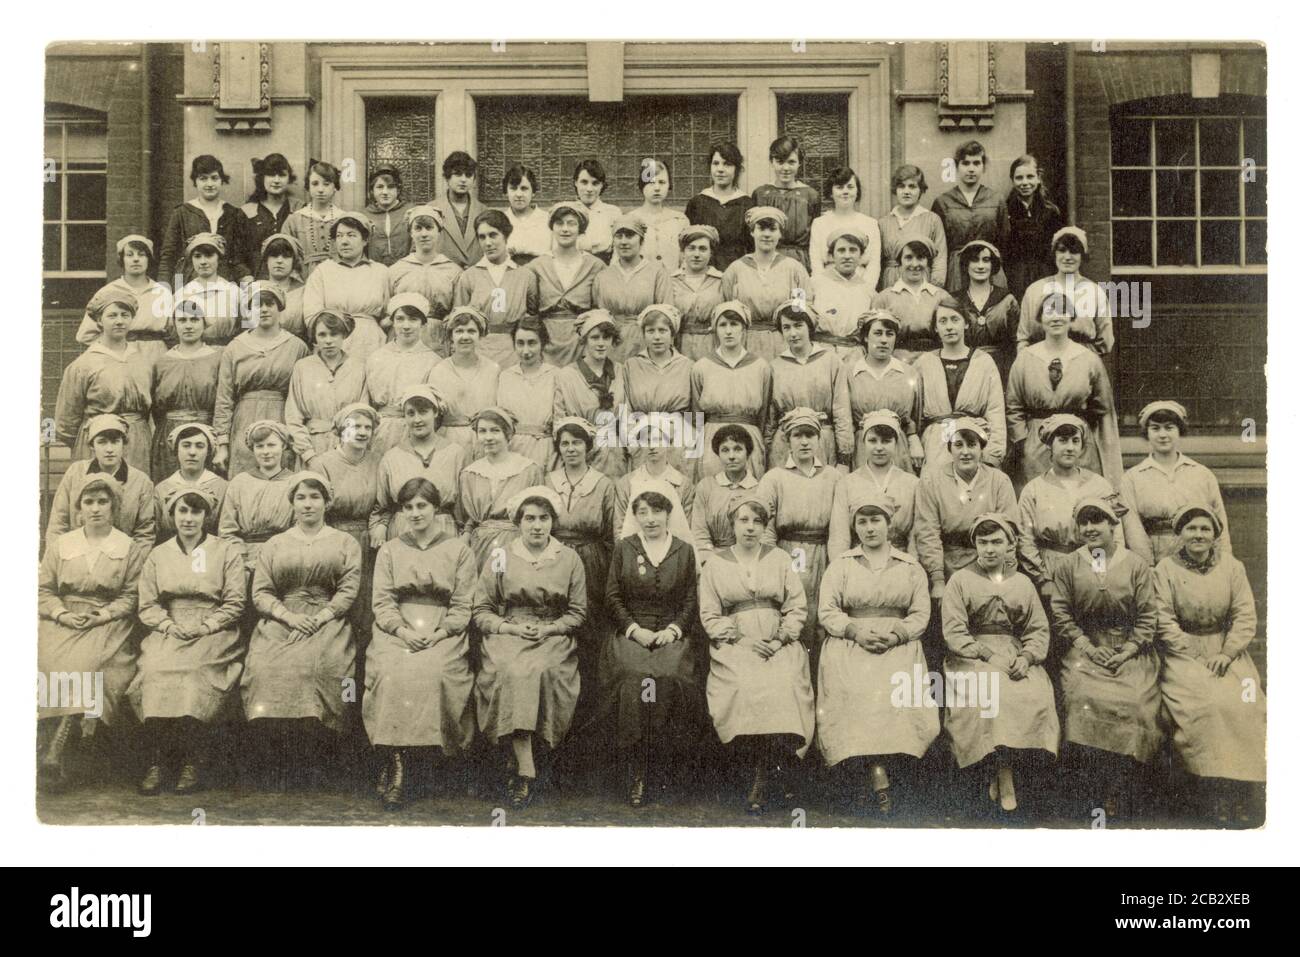 Cartolina originale del WW1 di donne operatrici della guerra ospedaliera, giovani donne, indossando uniformi e cappellini di mob, un matron siede in prima fila, possibilmente ordinanze ospedaliere Regno Unito circa 1916 Foto Stock